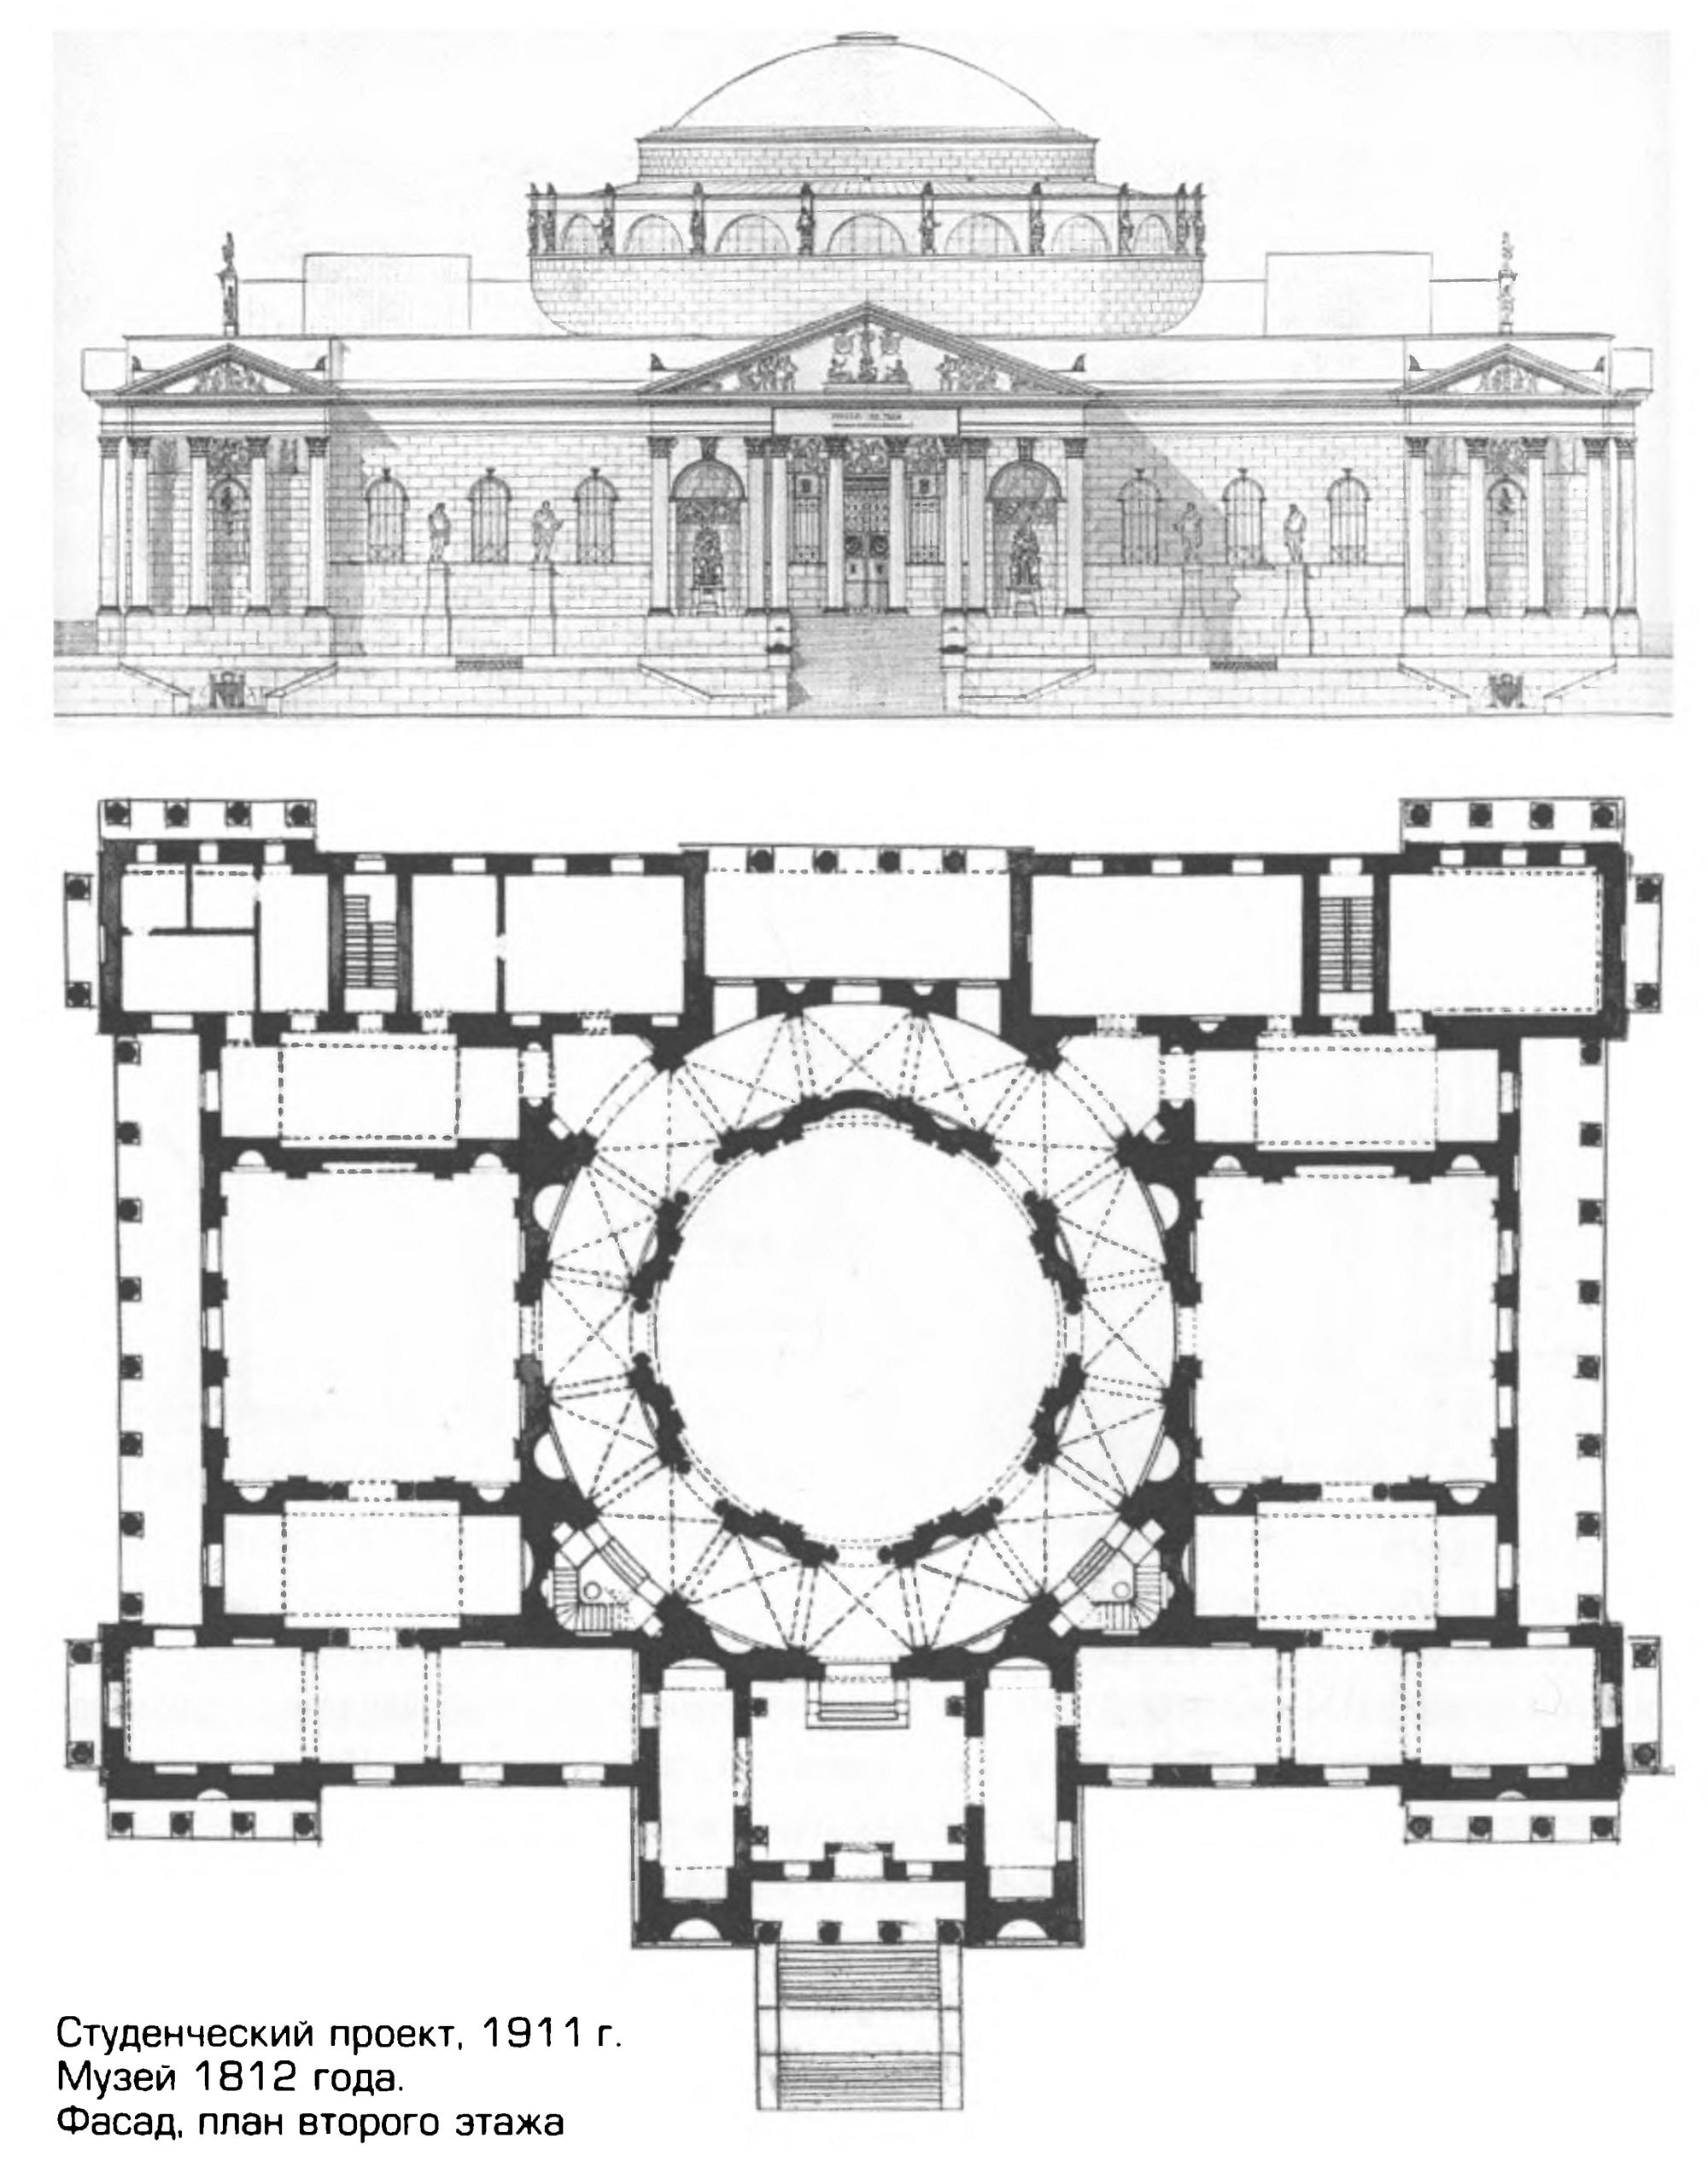 Студенческий проект, 1911 г. Музей 1812 года. Фасад, план второго этажа